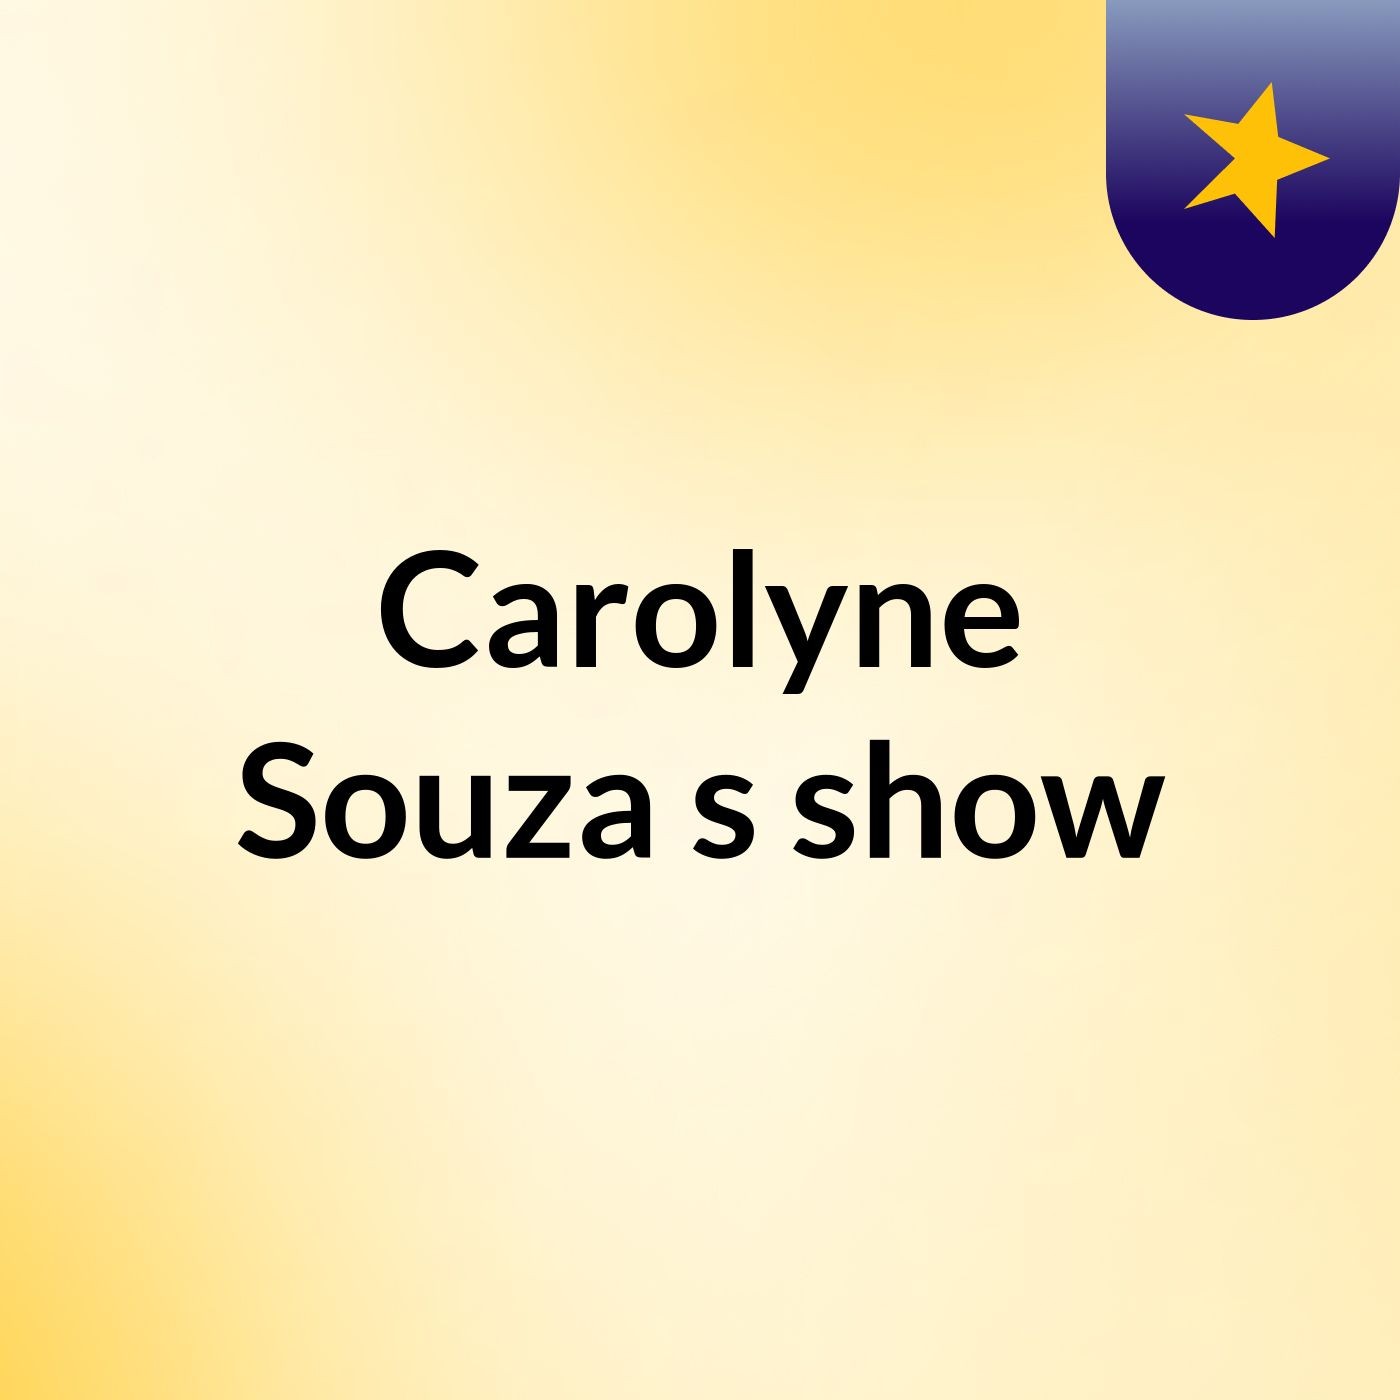 Carolyne Souza's show